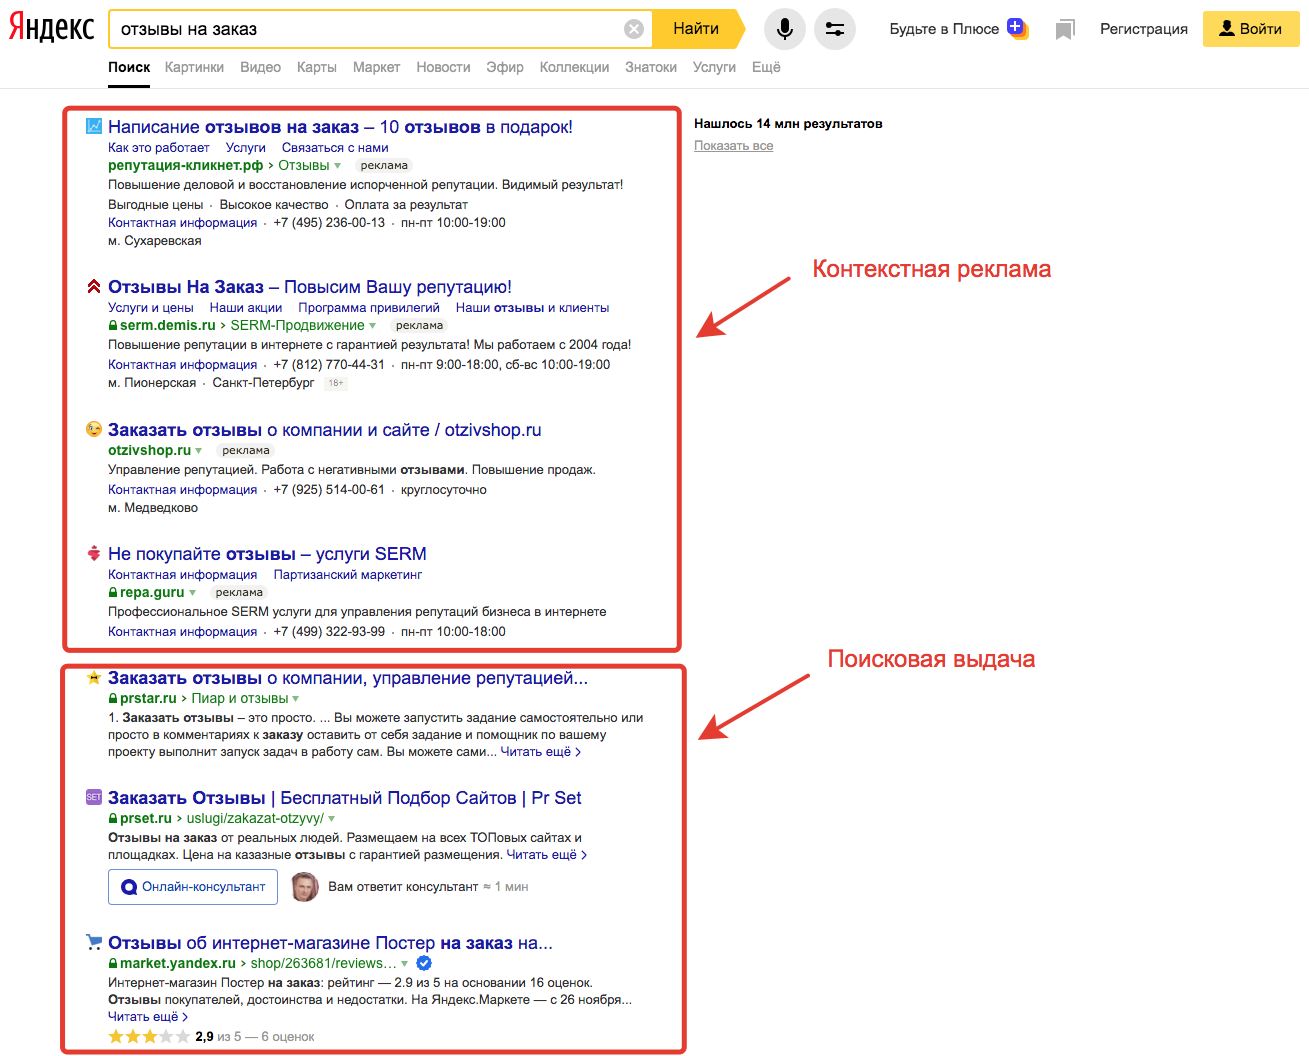 Поисковое продвижение сайта что такое поисковая выдача в Яндексе